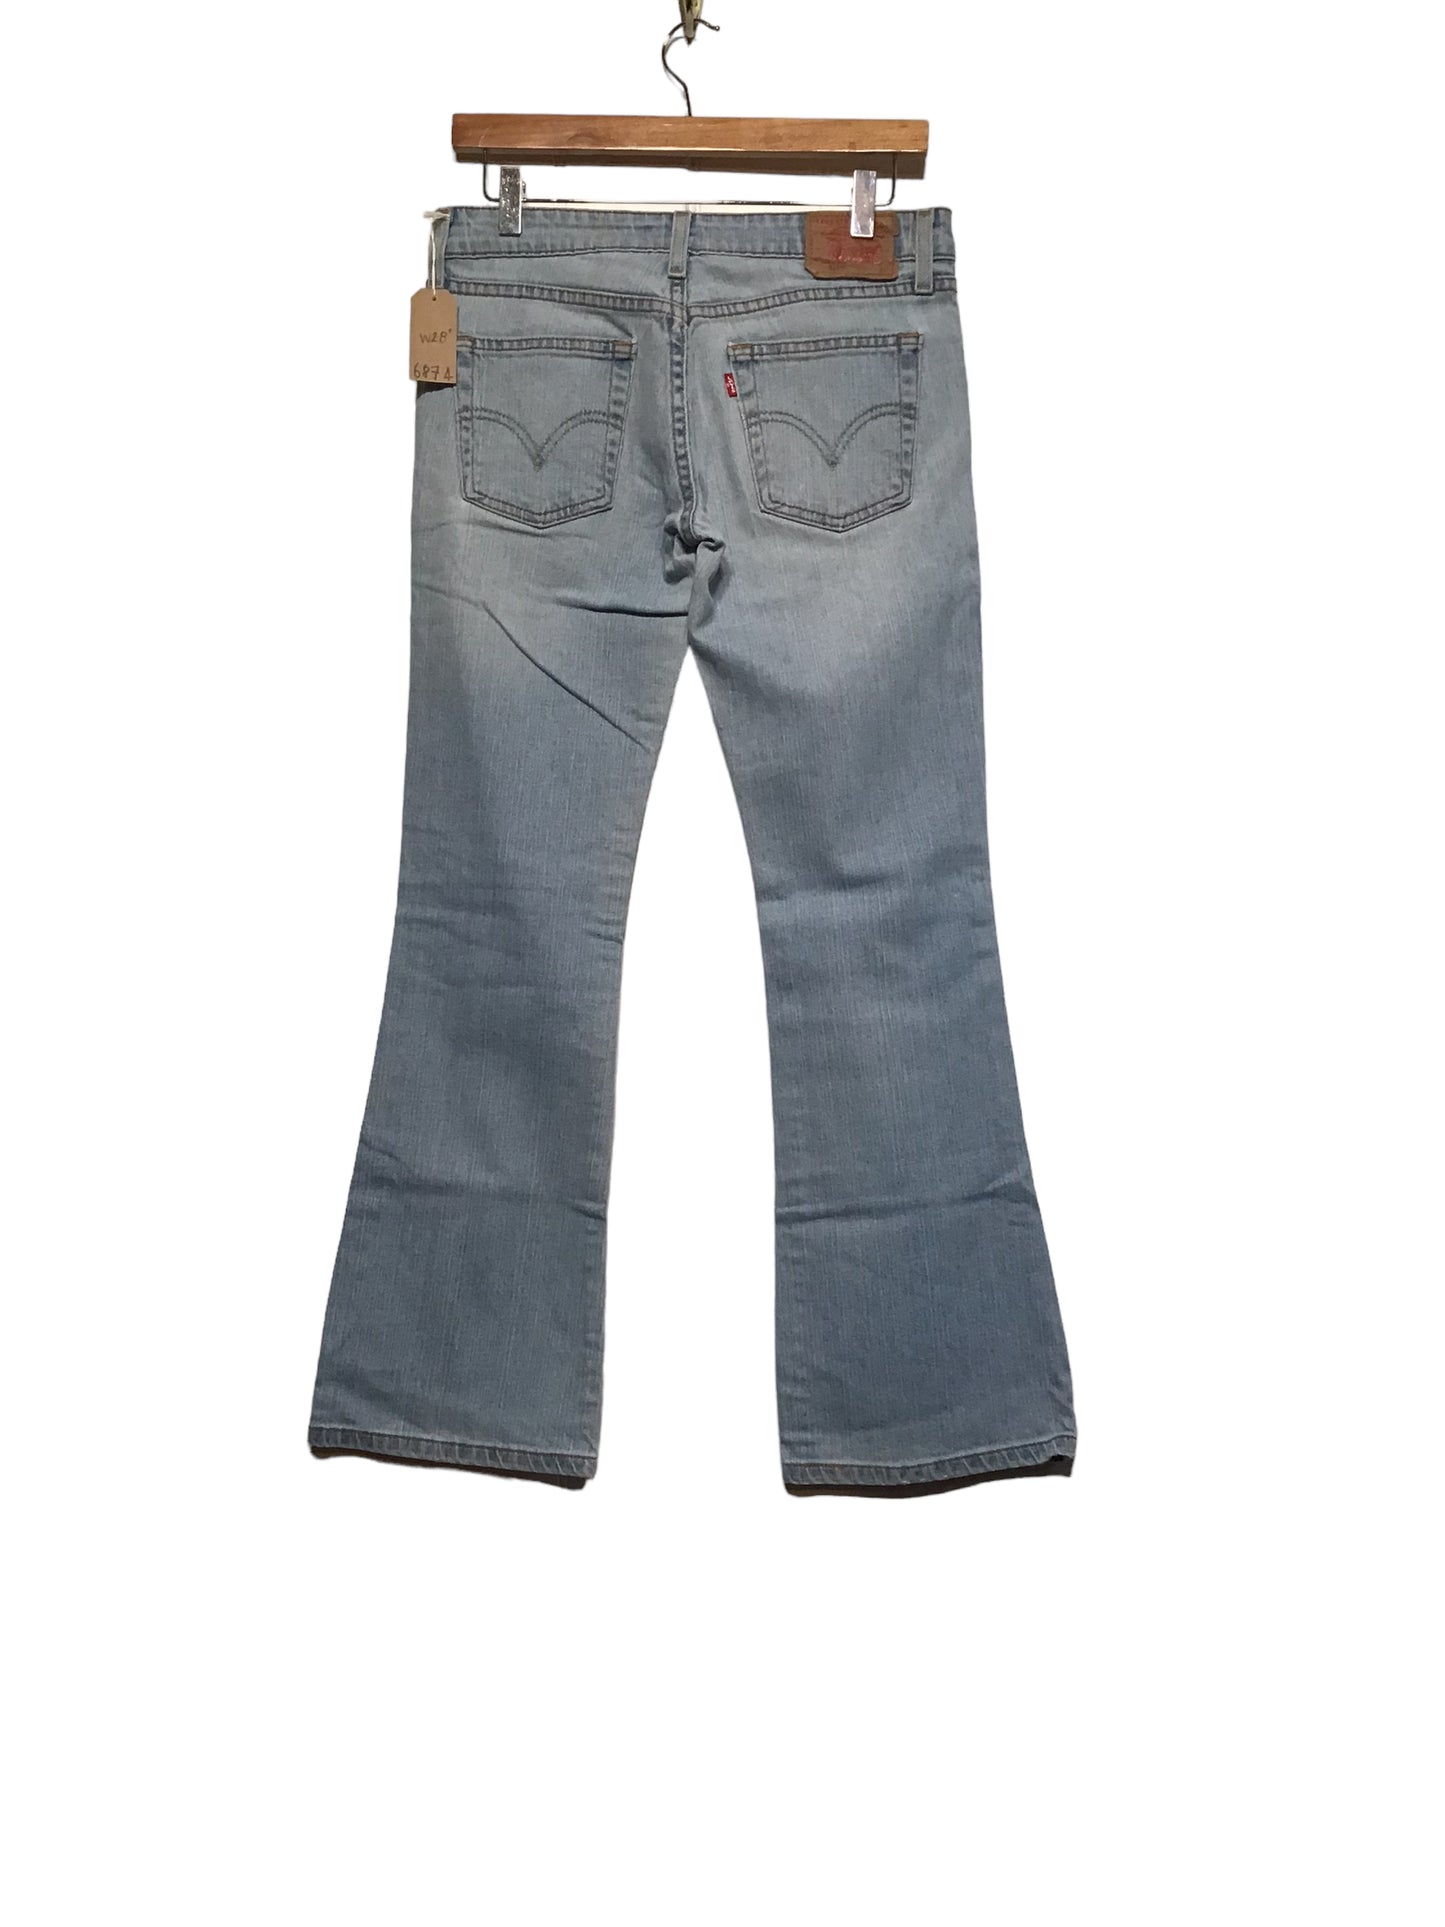 Levi 518 Jeans (32x30)